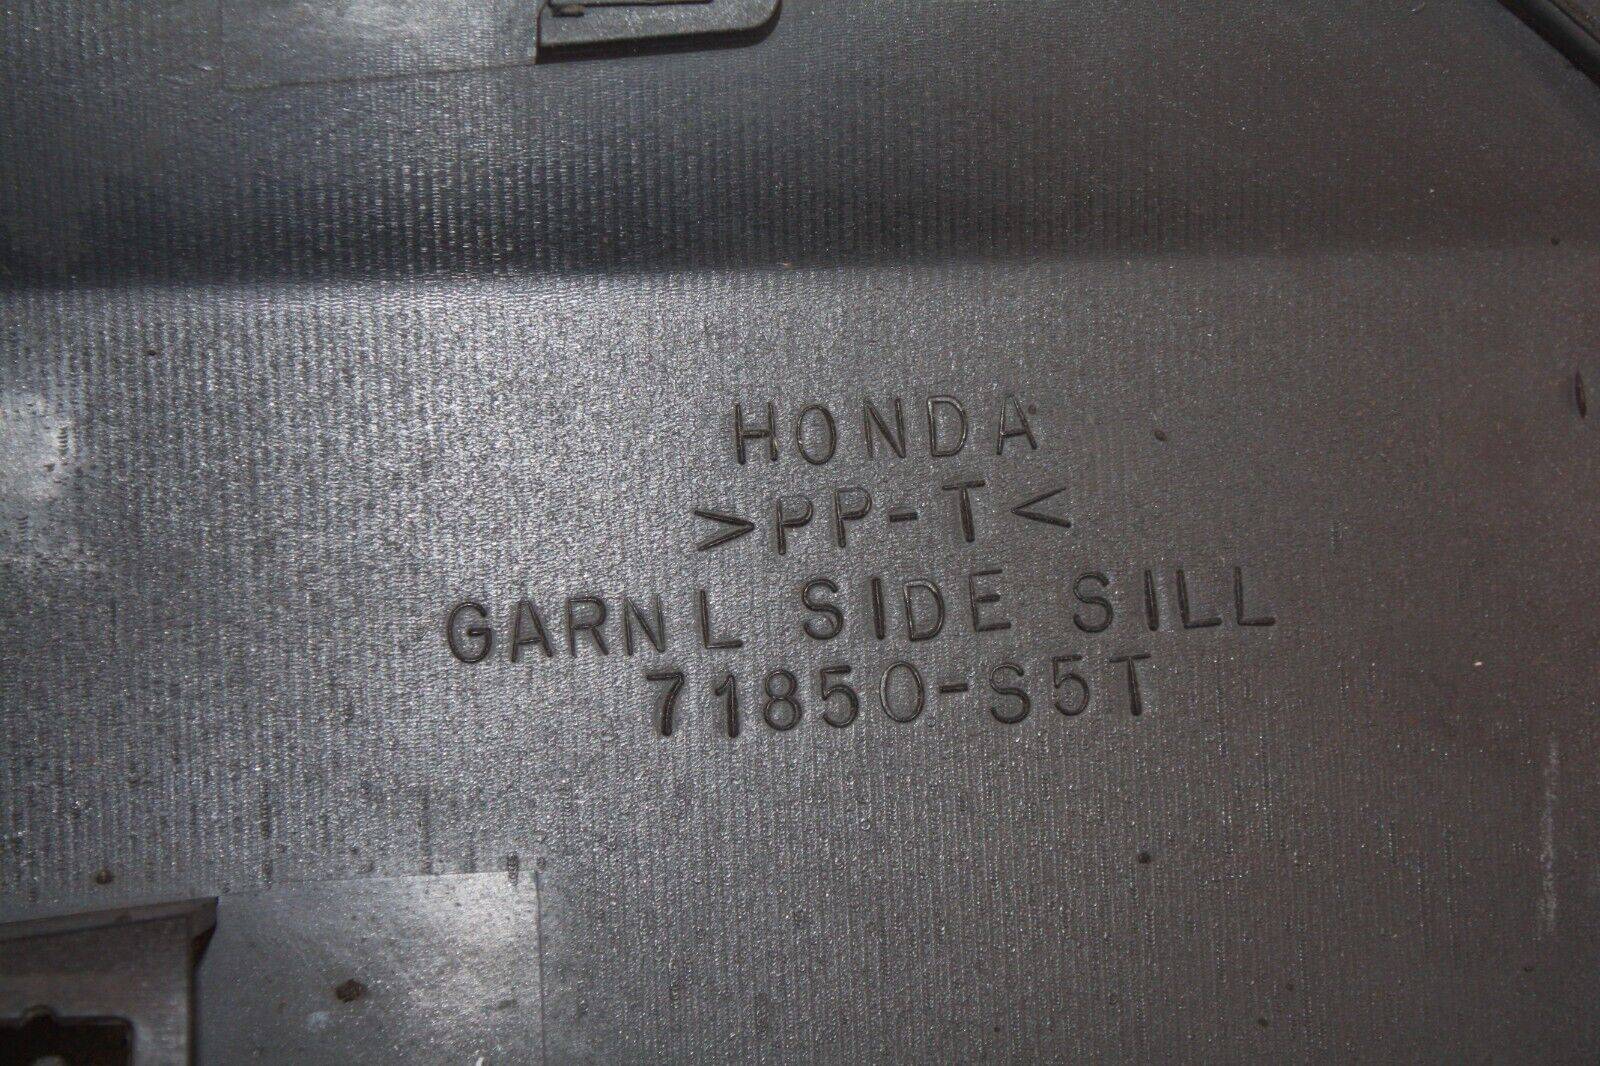 Honda-Civic-Type-R-Left-Side-Skirt-2001-TO-2005-71850-S5T-Genuine-176206408321-8